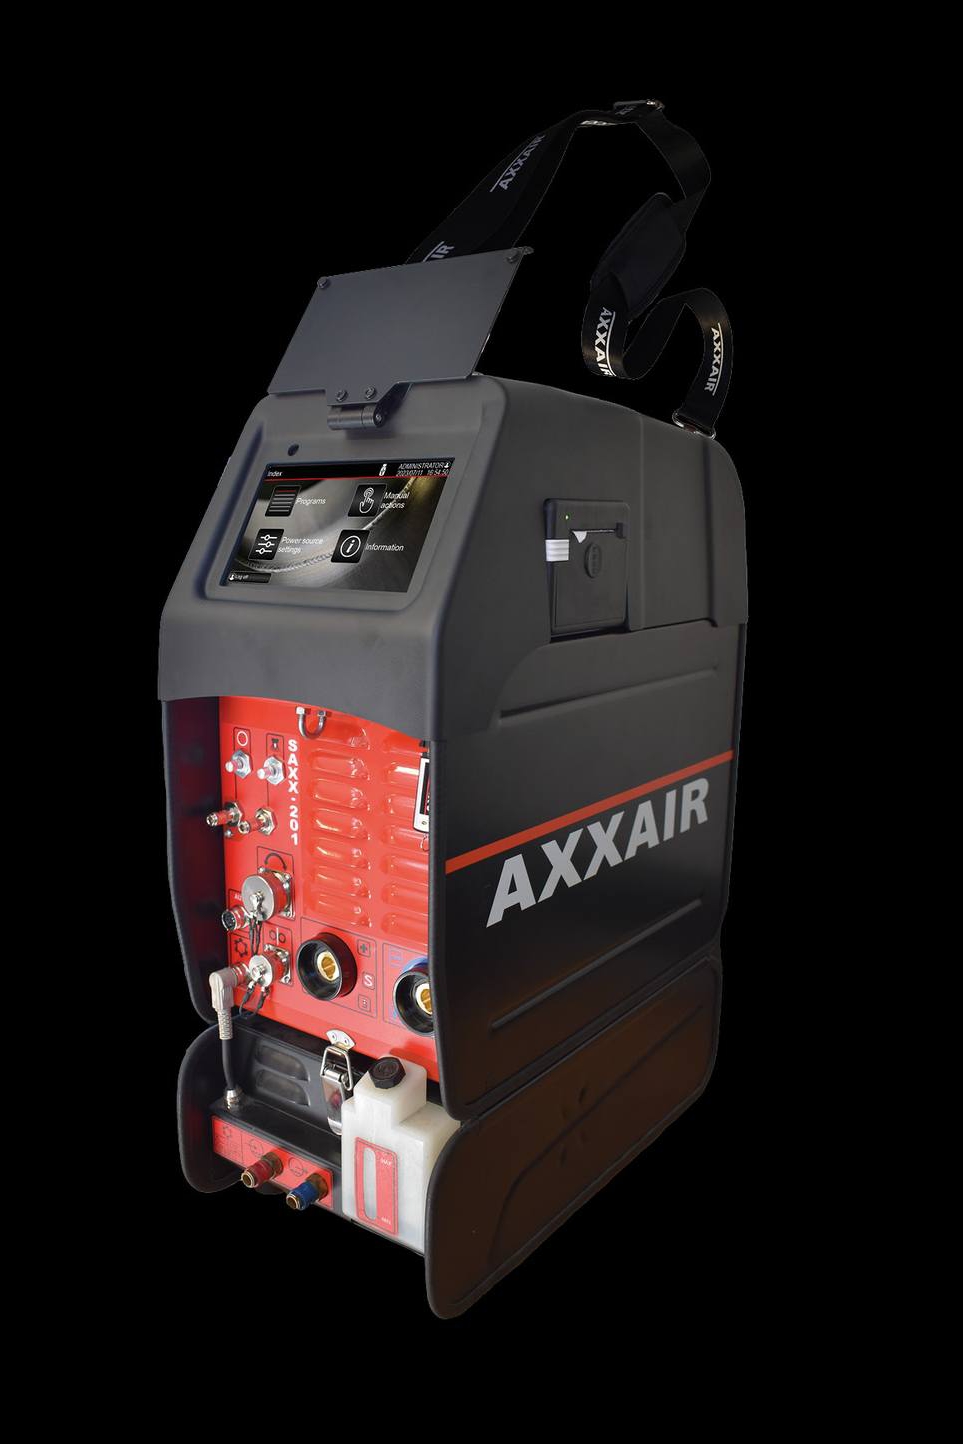 generatore-axxair-saxx-201-con-raffreddamento-scool-700